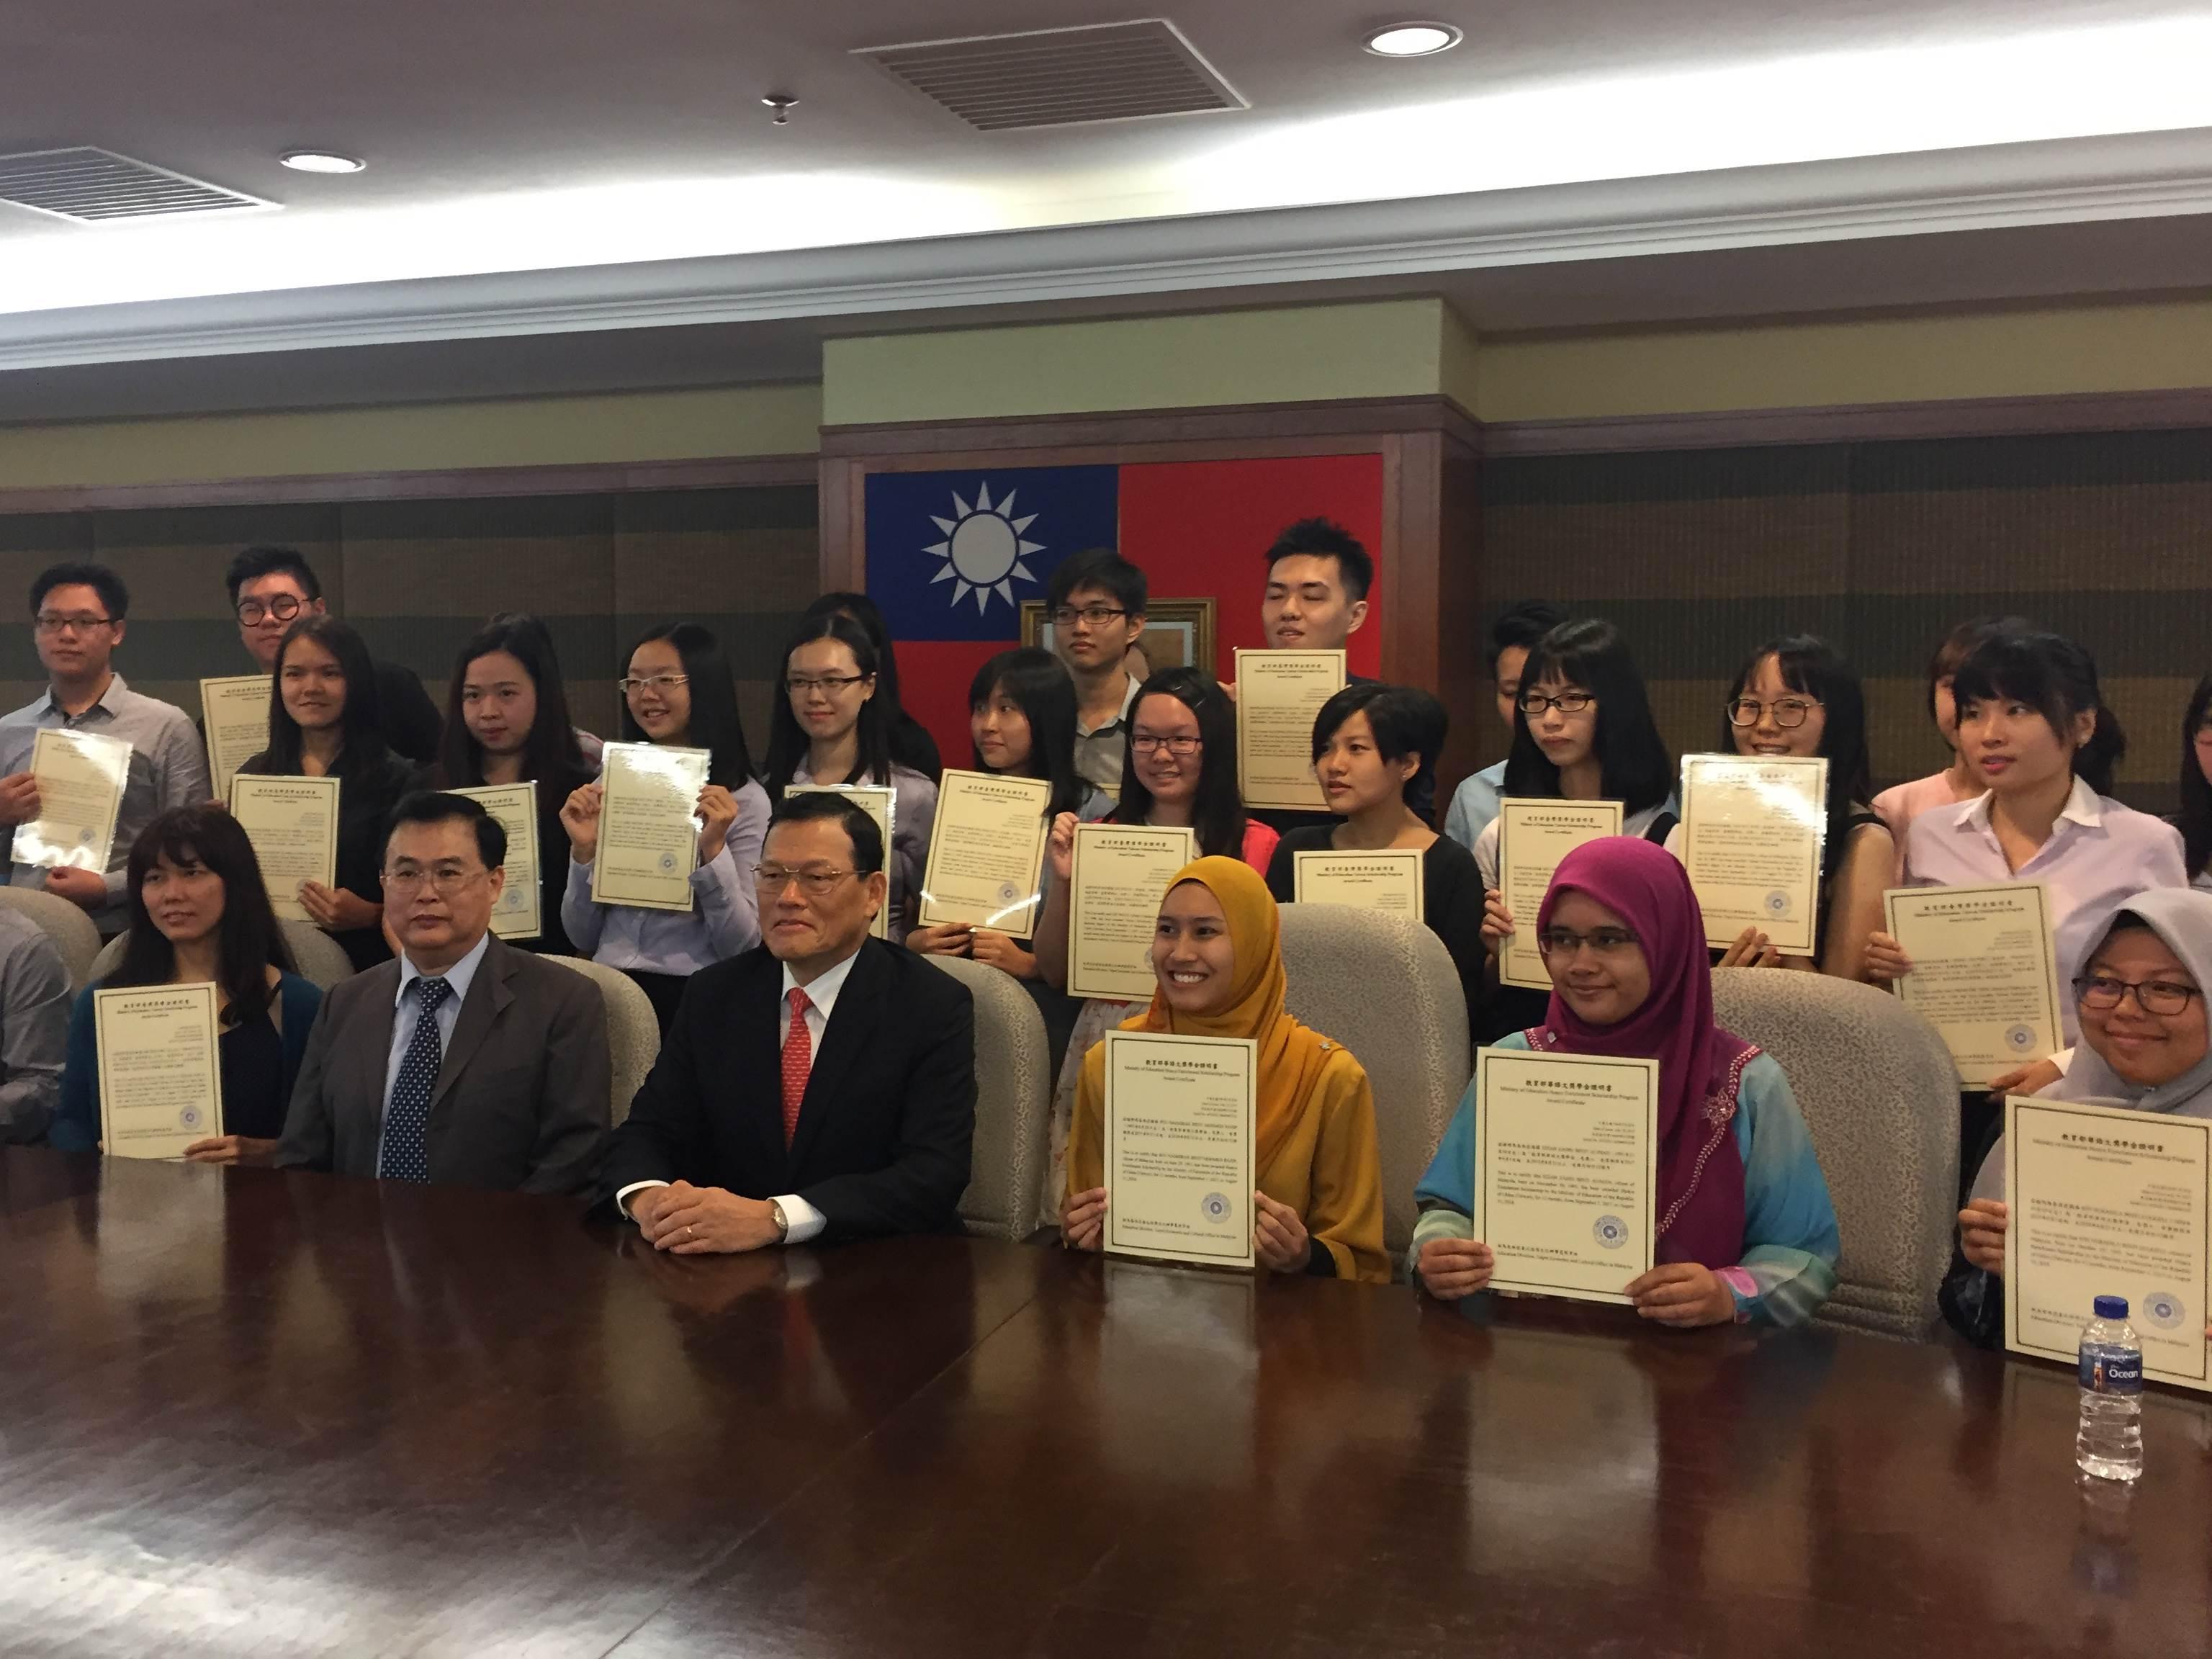 Wakil Chang, James Chi-ping mengambil gambar dengan para penerima Biasiswa Kementerian Pendidikan Taiwan  and Biasiswa Huayu Enrichment.  